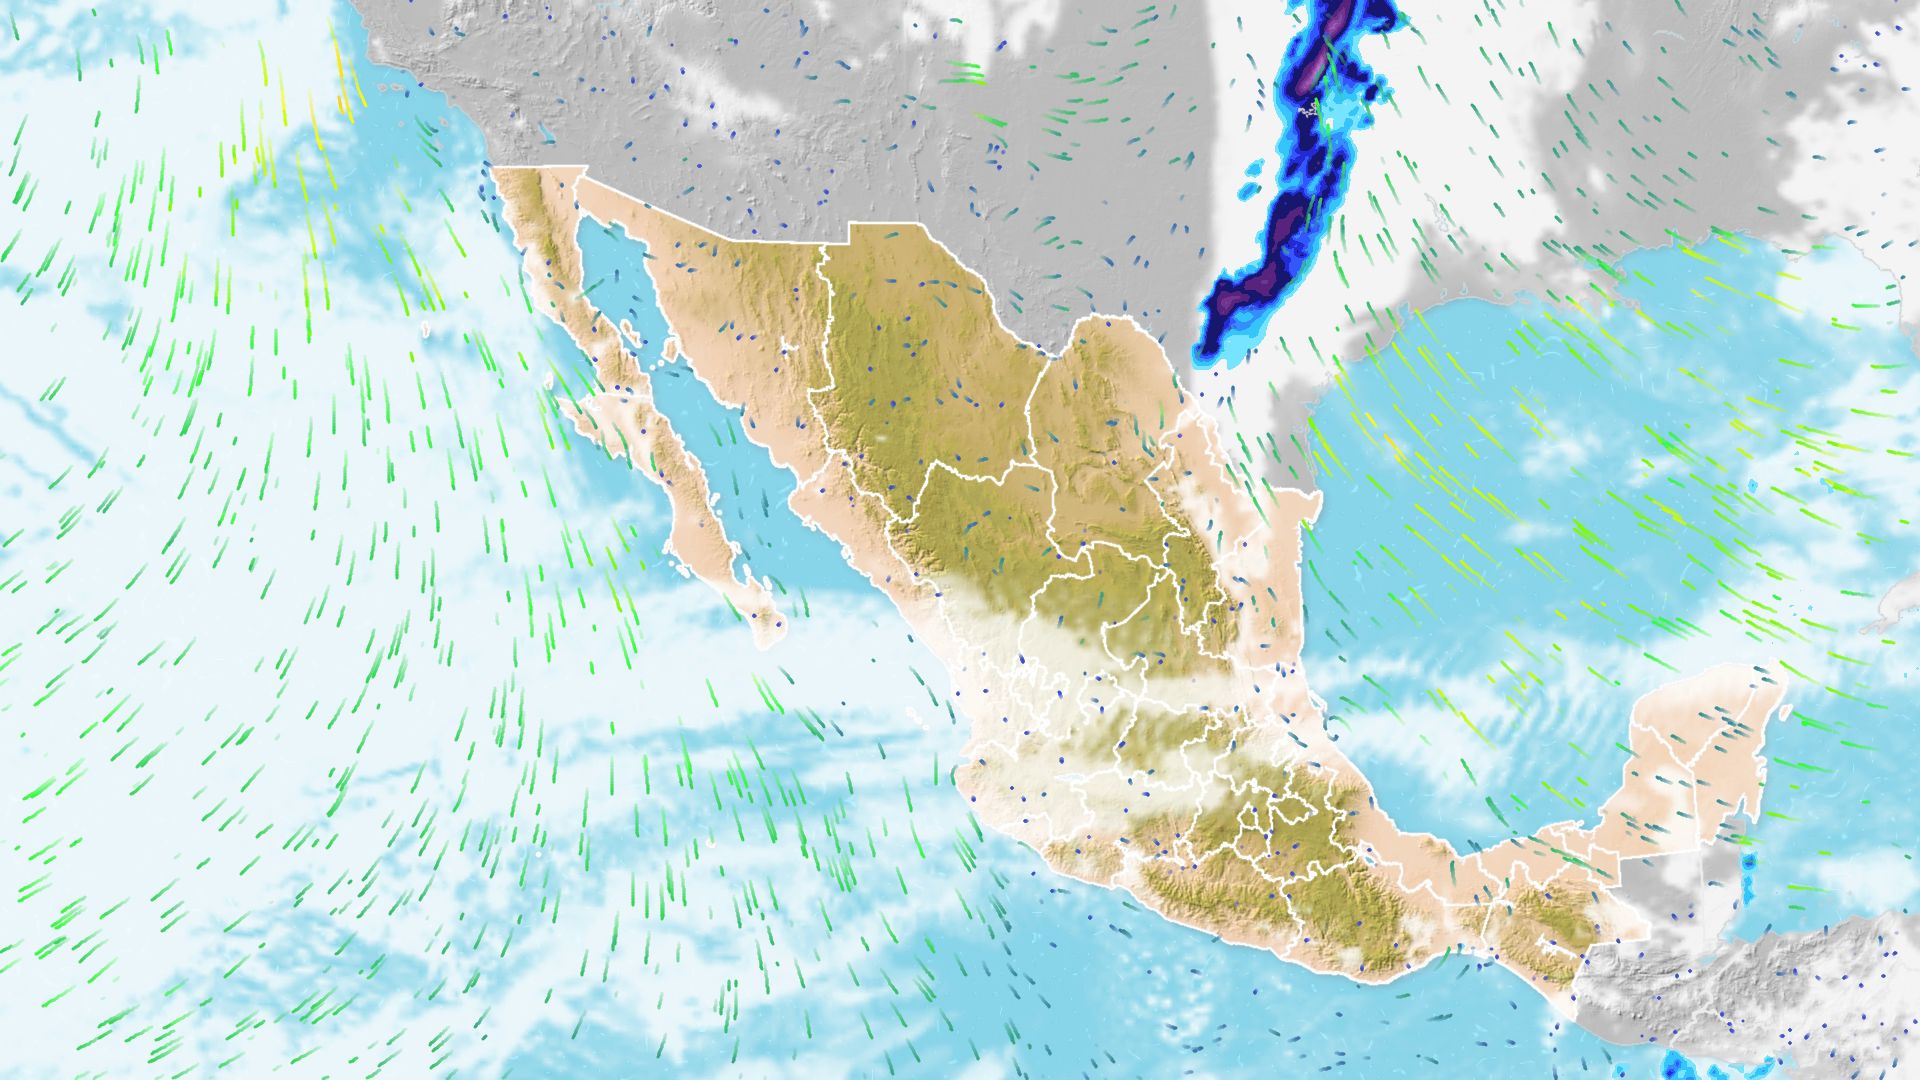 Llega el fin de semana a México con vientos fuertes y posibles tormentas eléctricas. Noticias en tiempo real